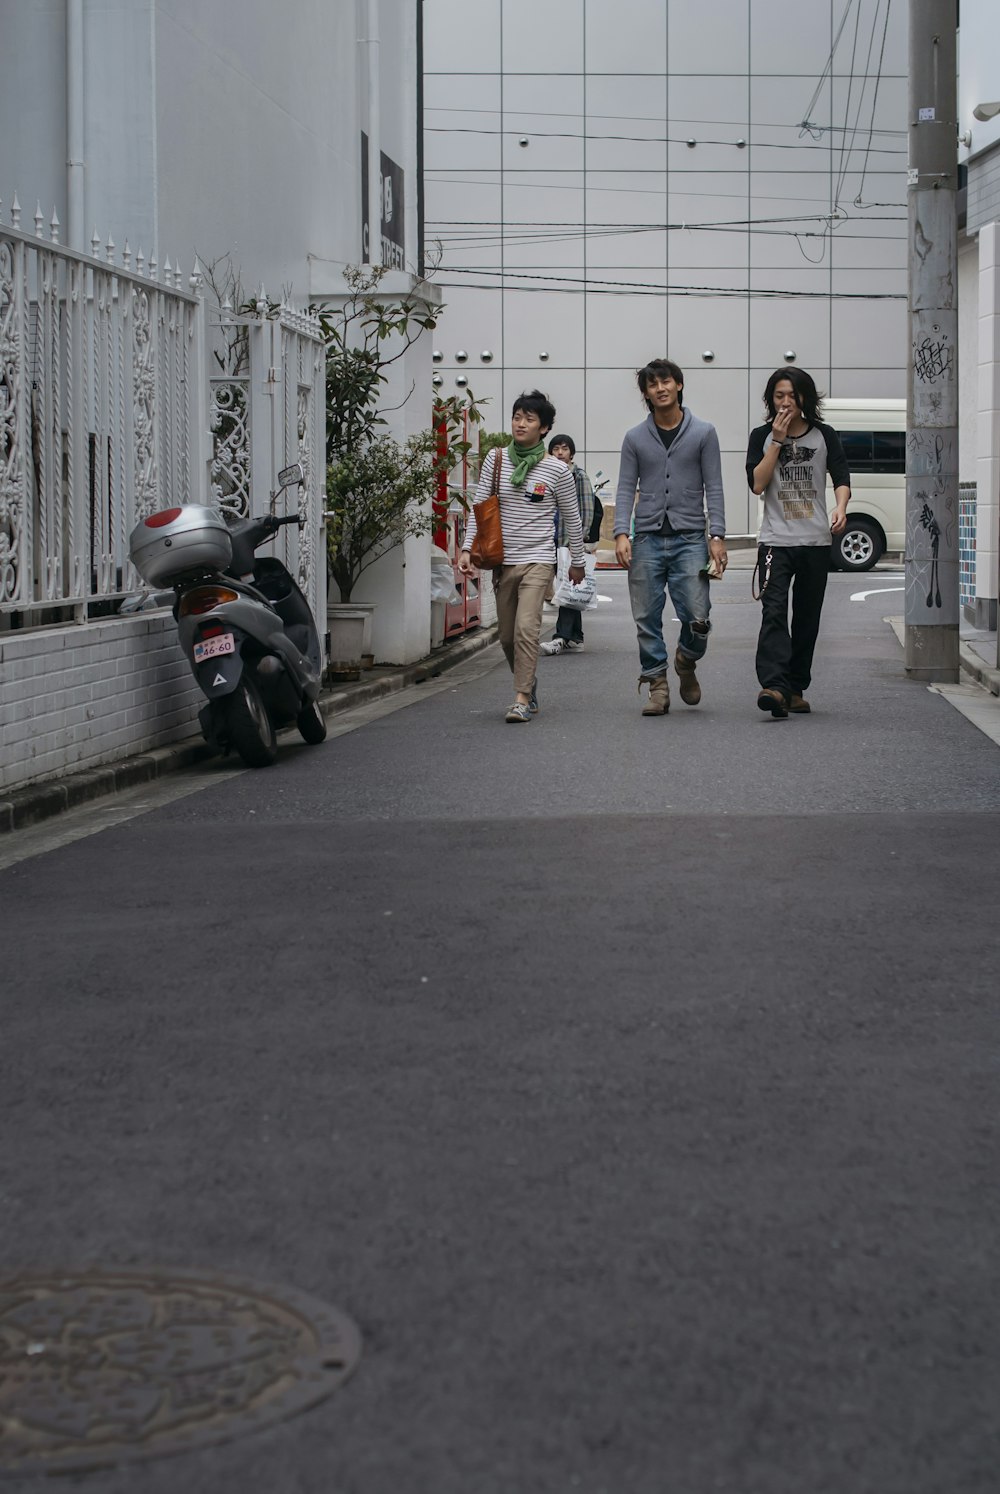 homme en chemise bleue et femme en t-shirt blanc marchant sur le trottoir pendant la journée